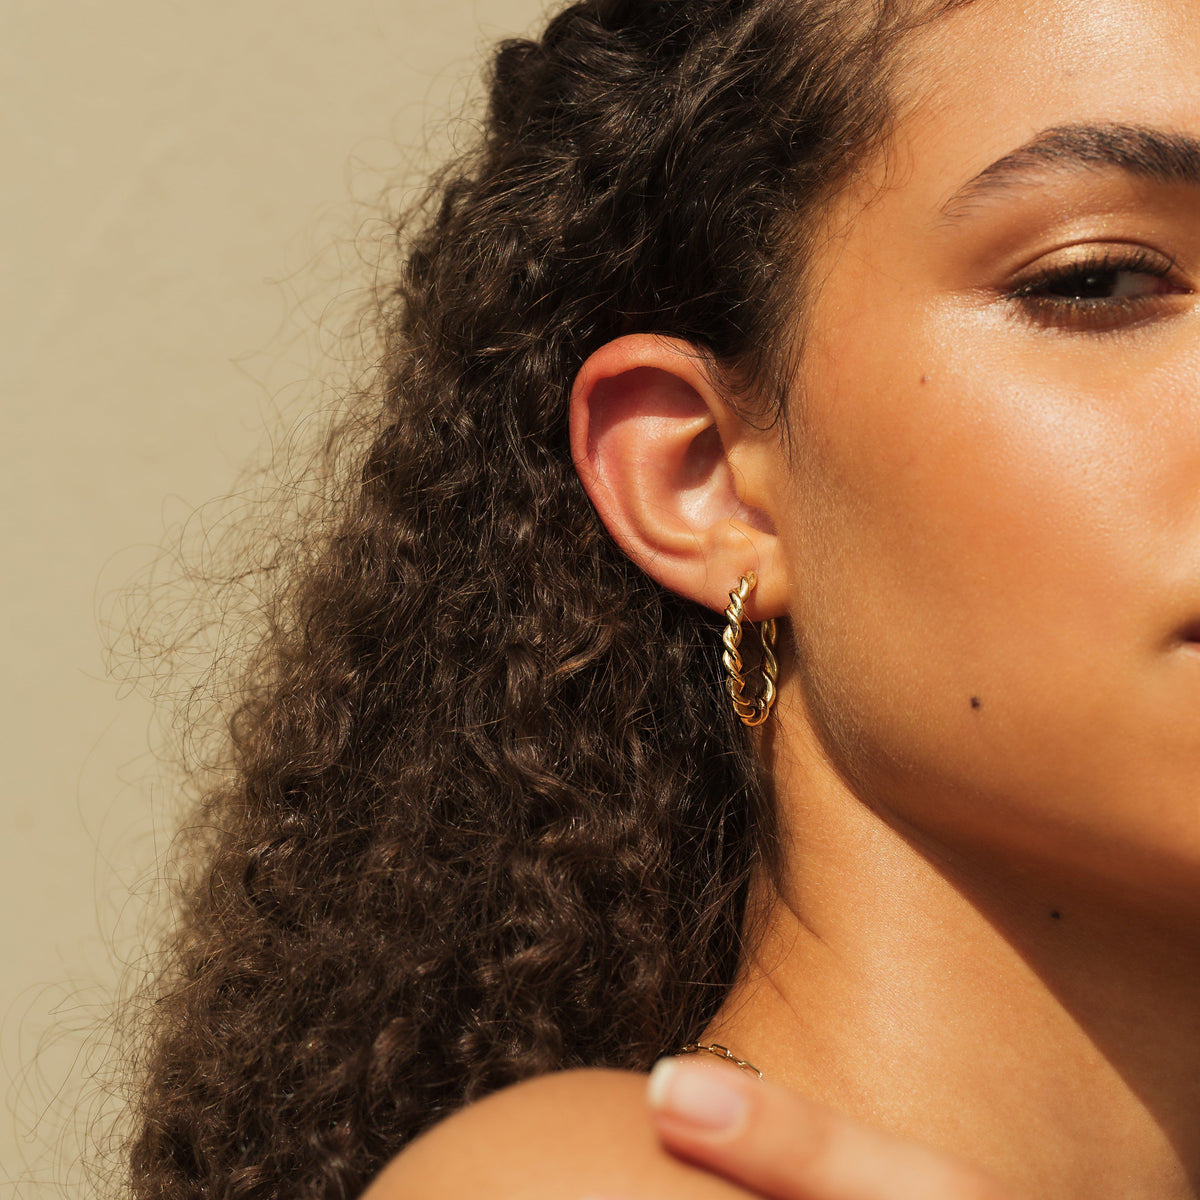 Twist Multi-hoops Earring, Gold & Crystal Brass & Glass, Women